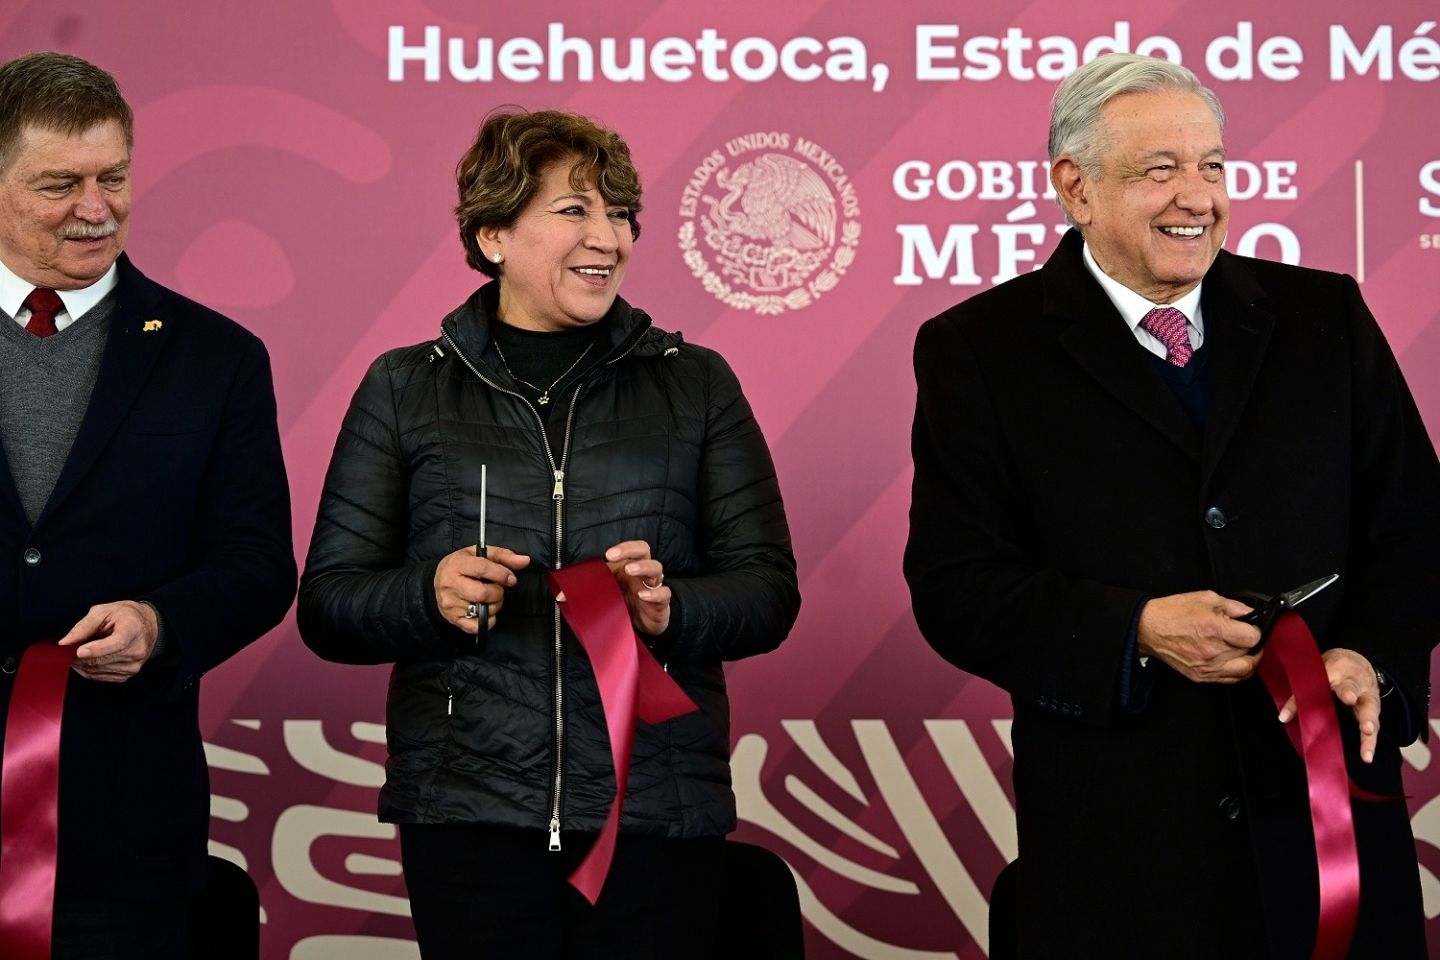 Megafarmacia del Bienestar es real, Presidente López Obrador y Gobernadora Delfina Gómez inauguran la farmacia más grande del mundo